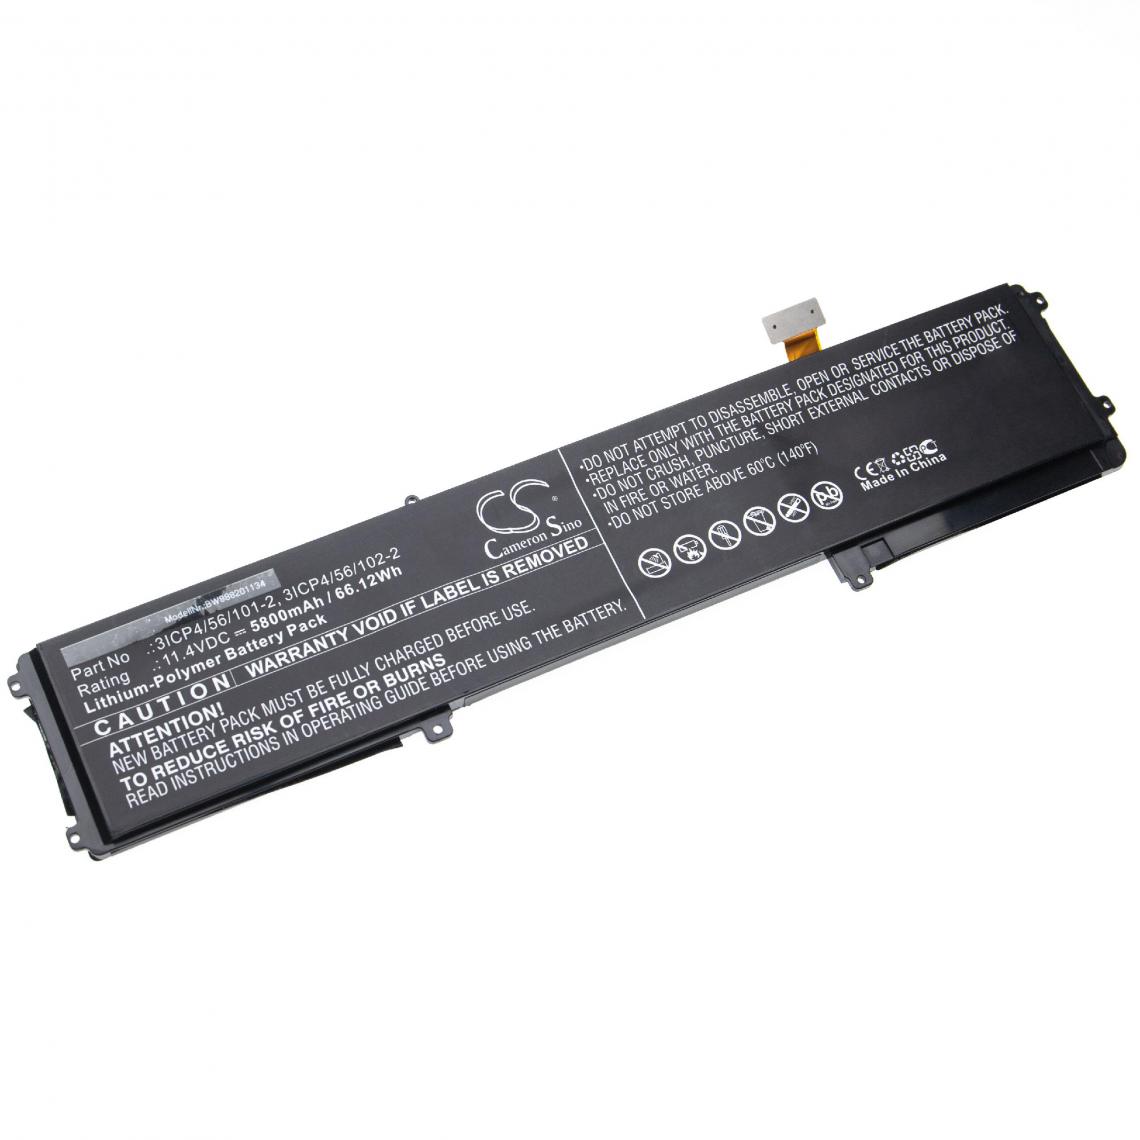 Vhbw - vhbw batterie remplace Razer CN-B-1-BETTY4-73E-05507, CN-B-1-BETTY4-73K-06472 pour laptop (5800mAh, 11,4V, Li-Polymère, noir) - Batterie PC Portable